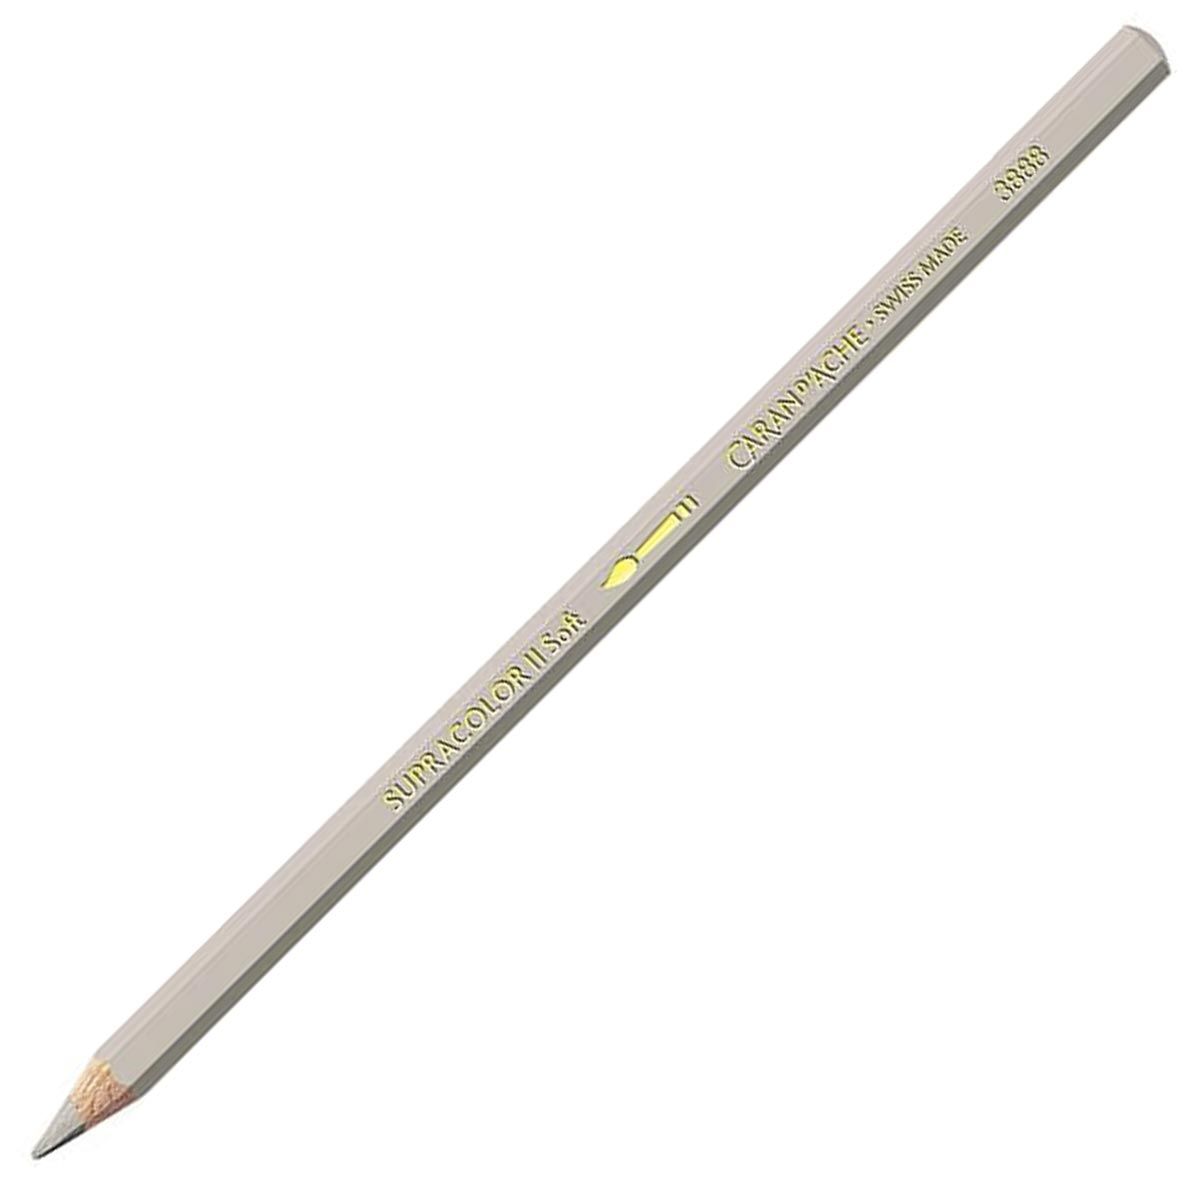 Caran d'Ache Supracolor ll Soft Aquarelle Pencil - Beige 403